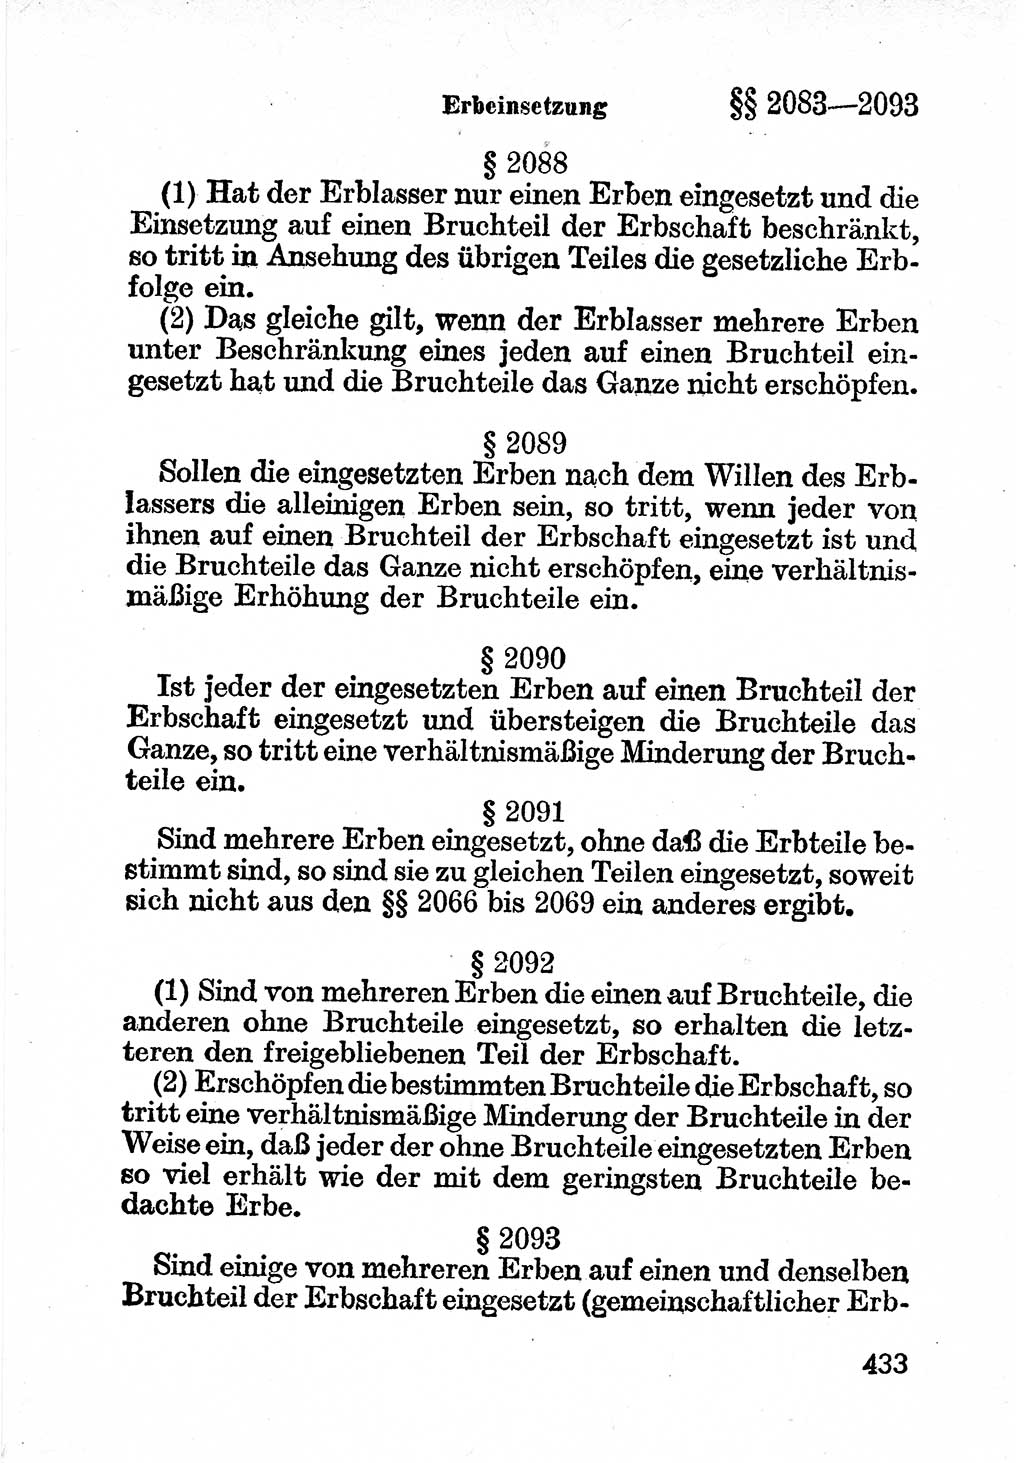 Bürgerliches Gesetzbuch (BGB) nebst wichtigen Nebengesetzen [Deutsche Demokratische Republik (DDR)] 1956, Seite 433 (BGB Nebenges. DDR 1956, S. 433)